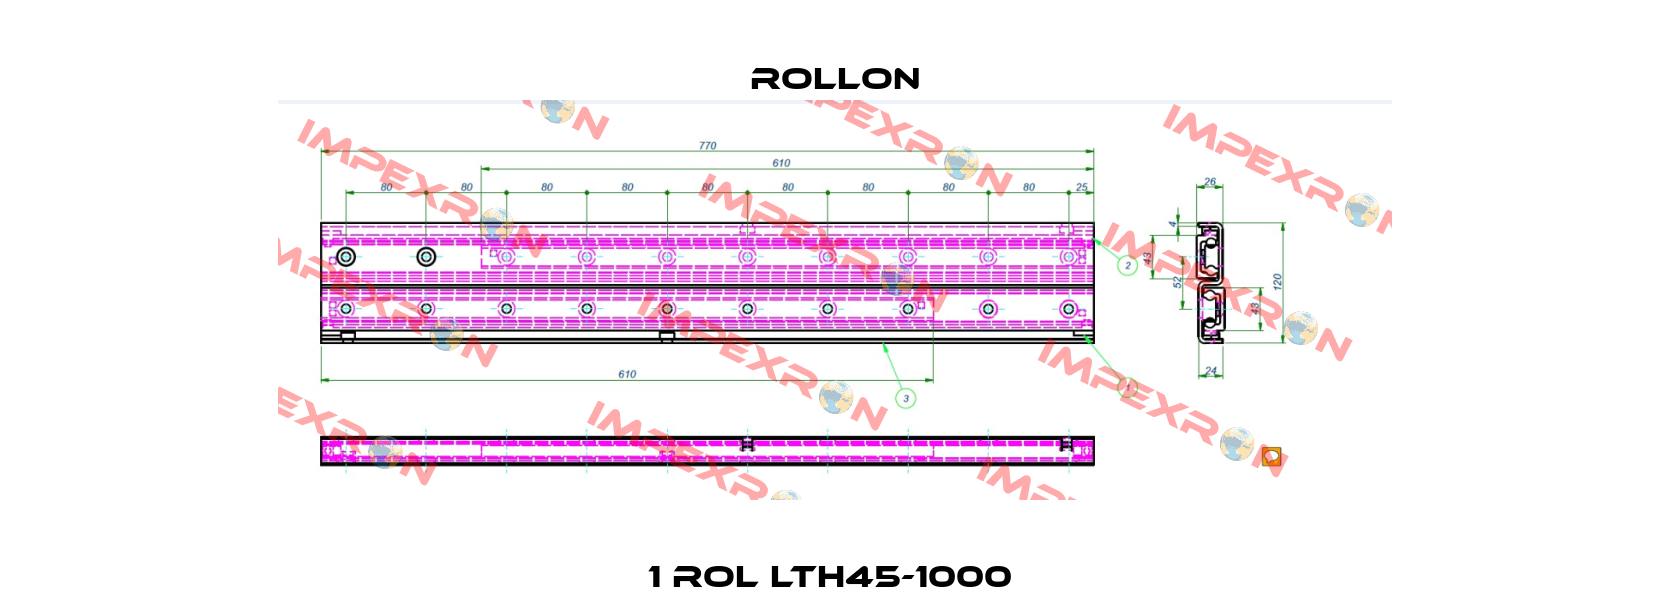 1 ROL LTH45-1000  Rollon